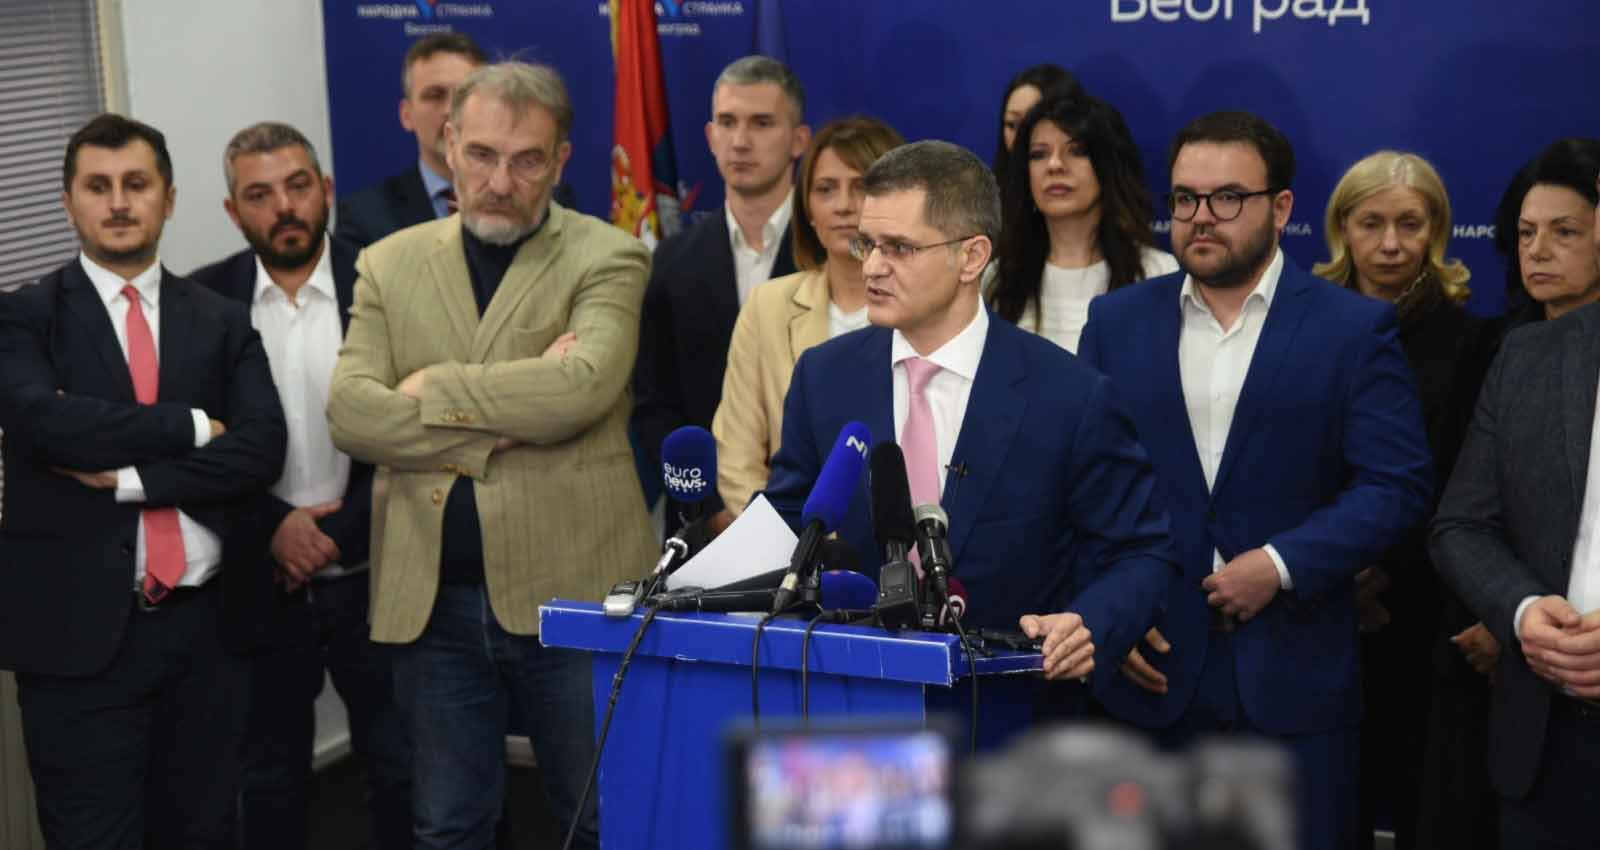 Јеремић: Лаж је да су распуштена четири одбора Народне странке због подршке Поношу